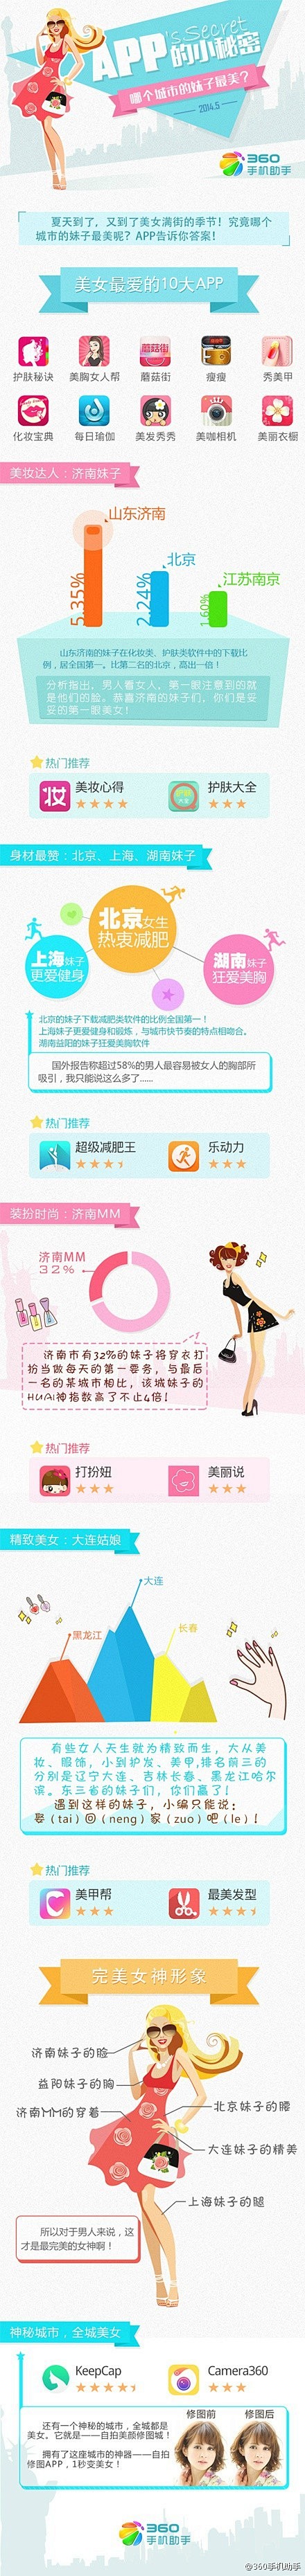 【中国各大城市美女排行榜】360手机助手...